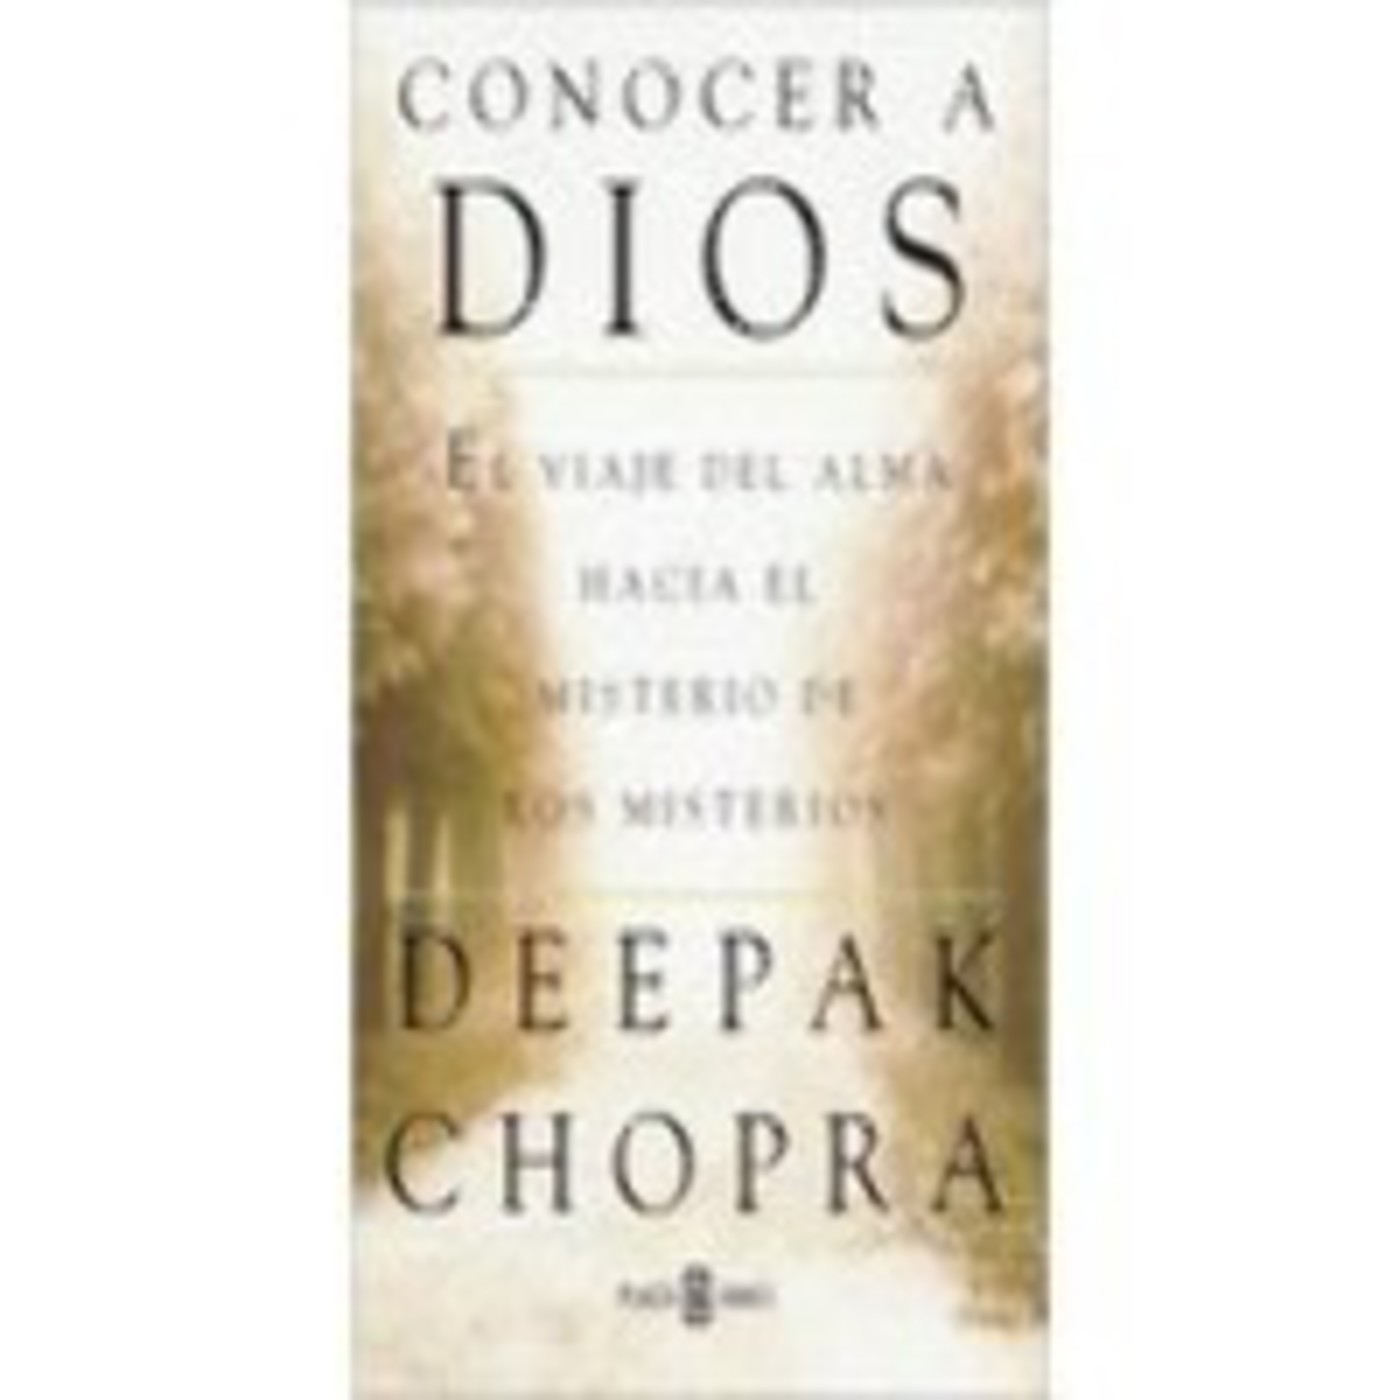 Conocer a Dios (deepak chopra) audiolibro en PODCAST 